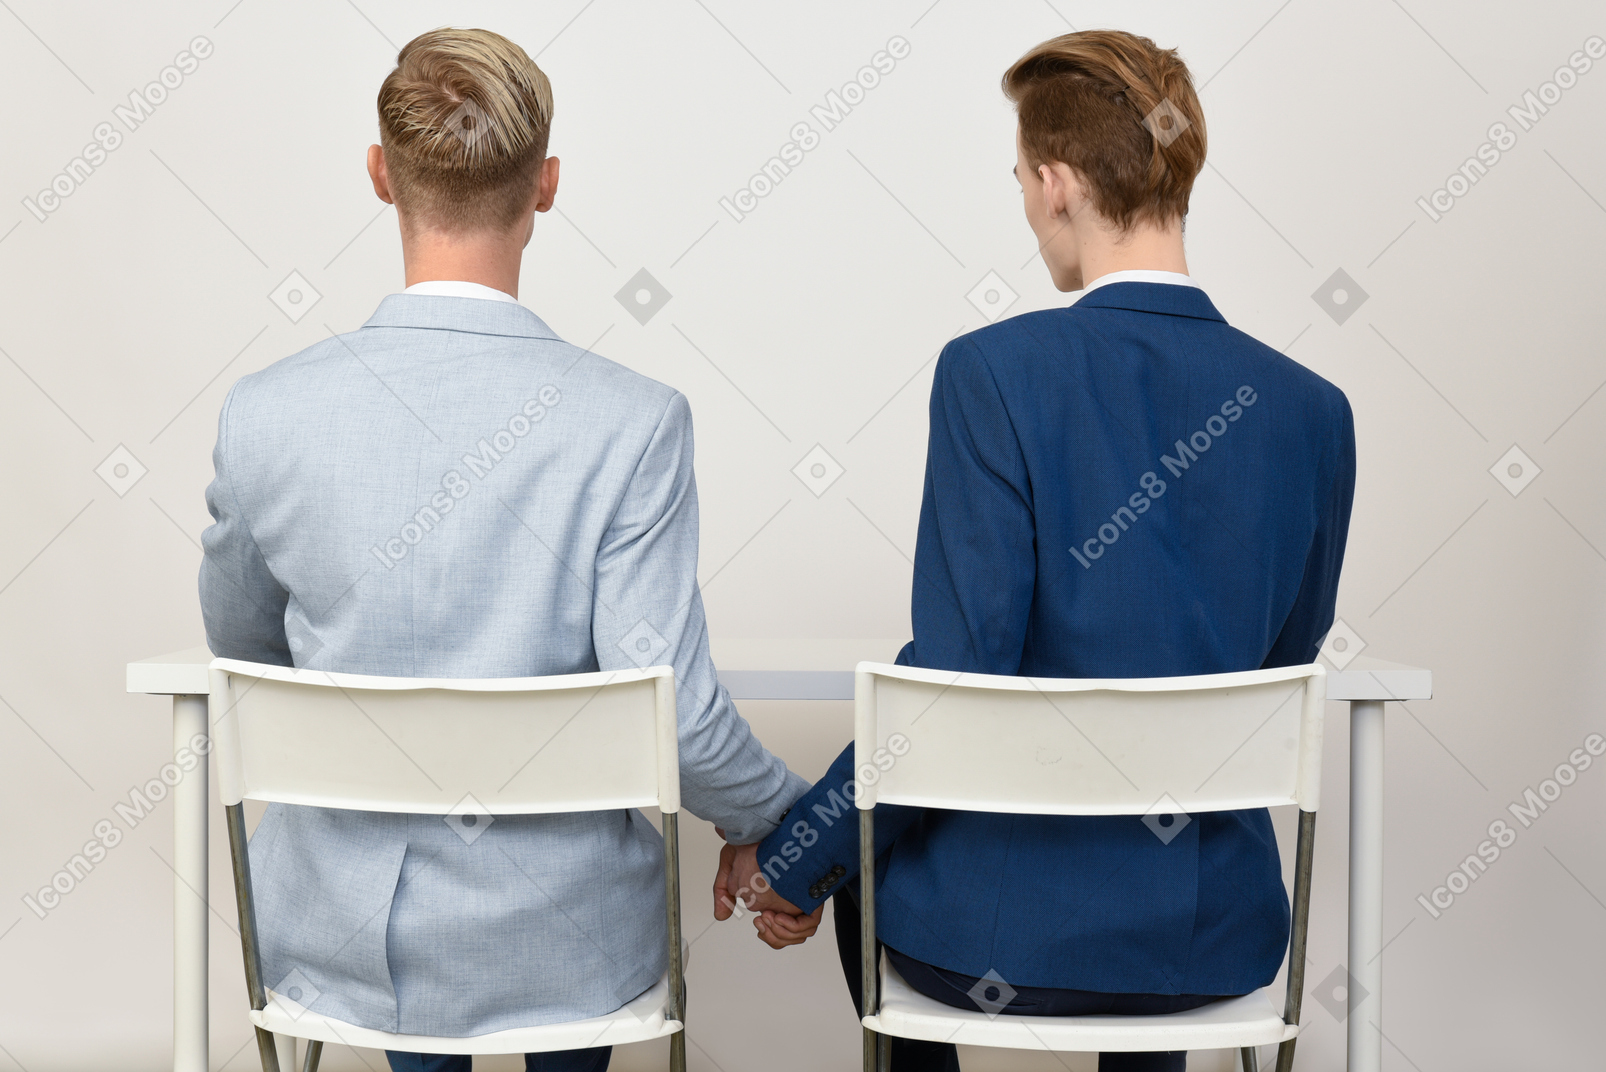 Zwei männliche kollegen, die hände unter der tabelle anhalten